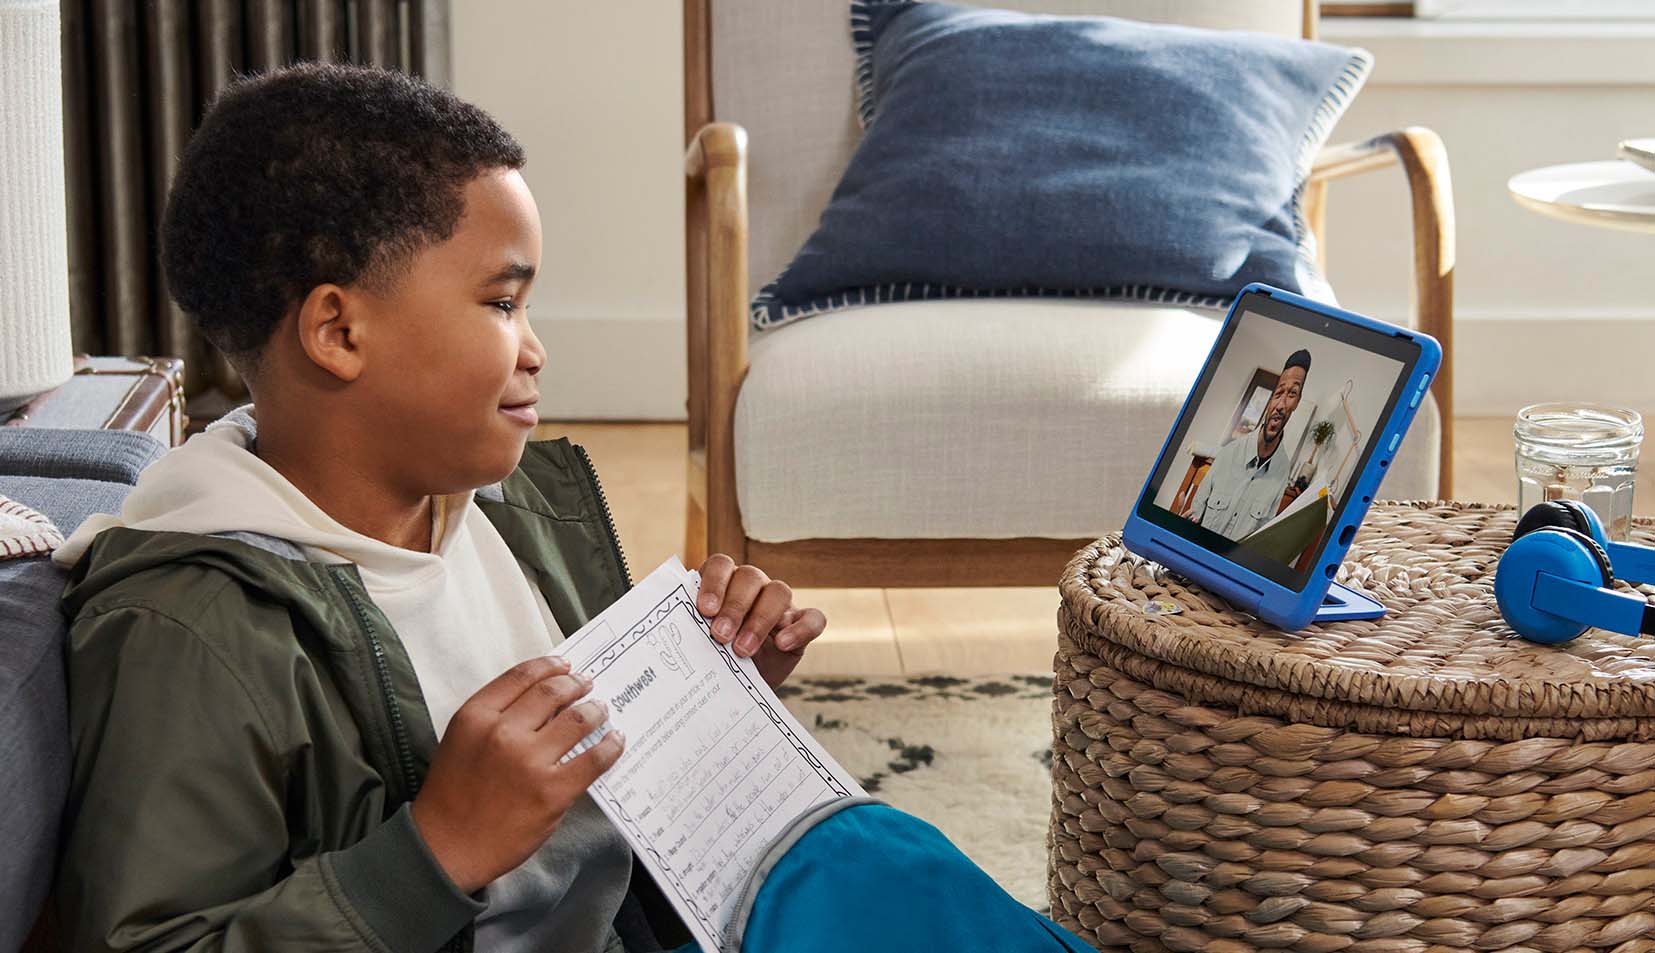 AmazonDie neuen Fire Kids Pro-Tablets von s wurden entwickelt, um ältere Kinder zu überzeugen 205